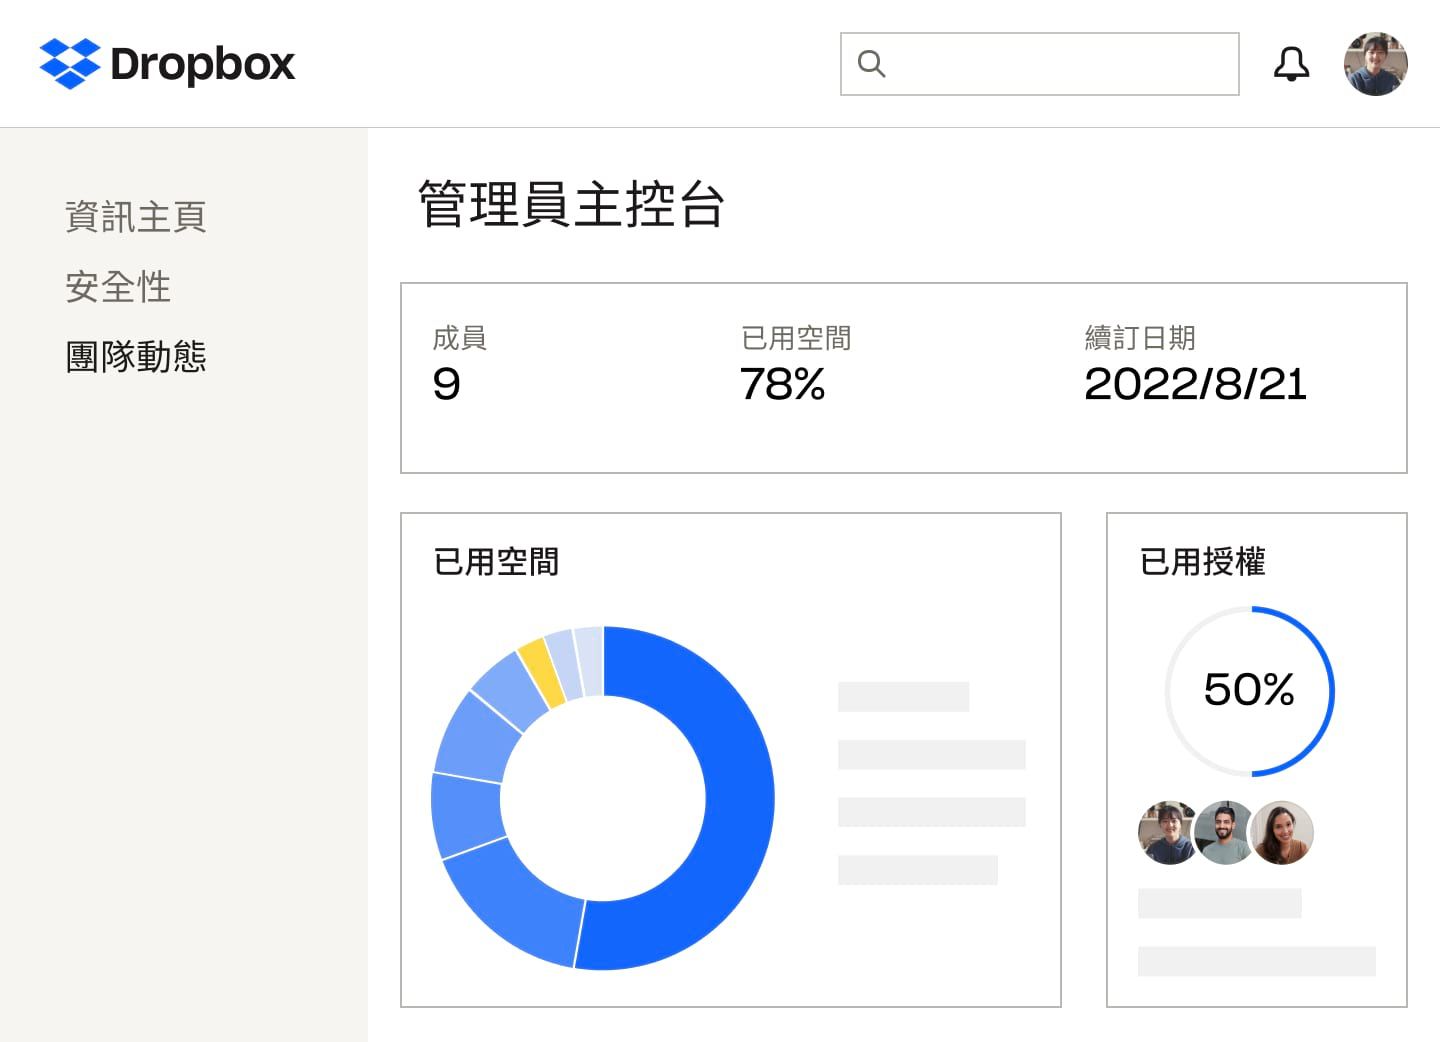 Dropbox 管理員主控台顯示成員數量、儲存空間百分比及使用的授權、訂購方案續訂日期，以及使用空間的藍黃色圓餅圖